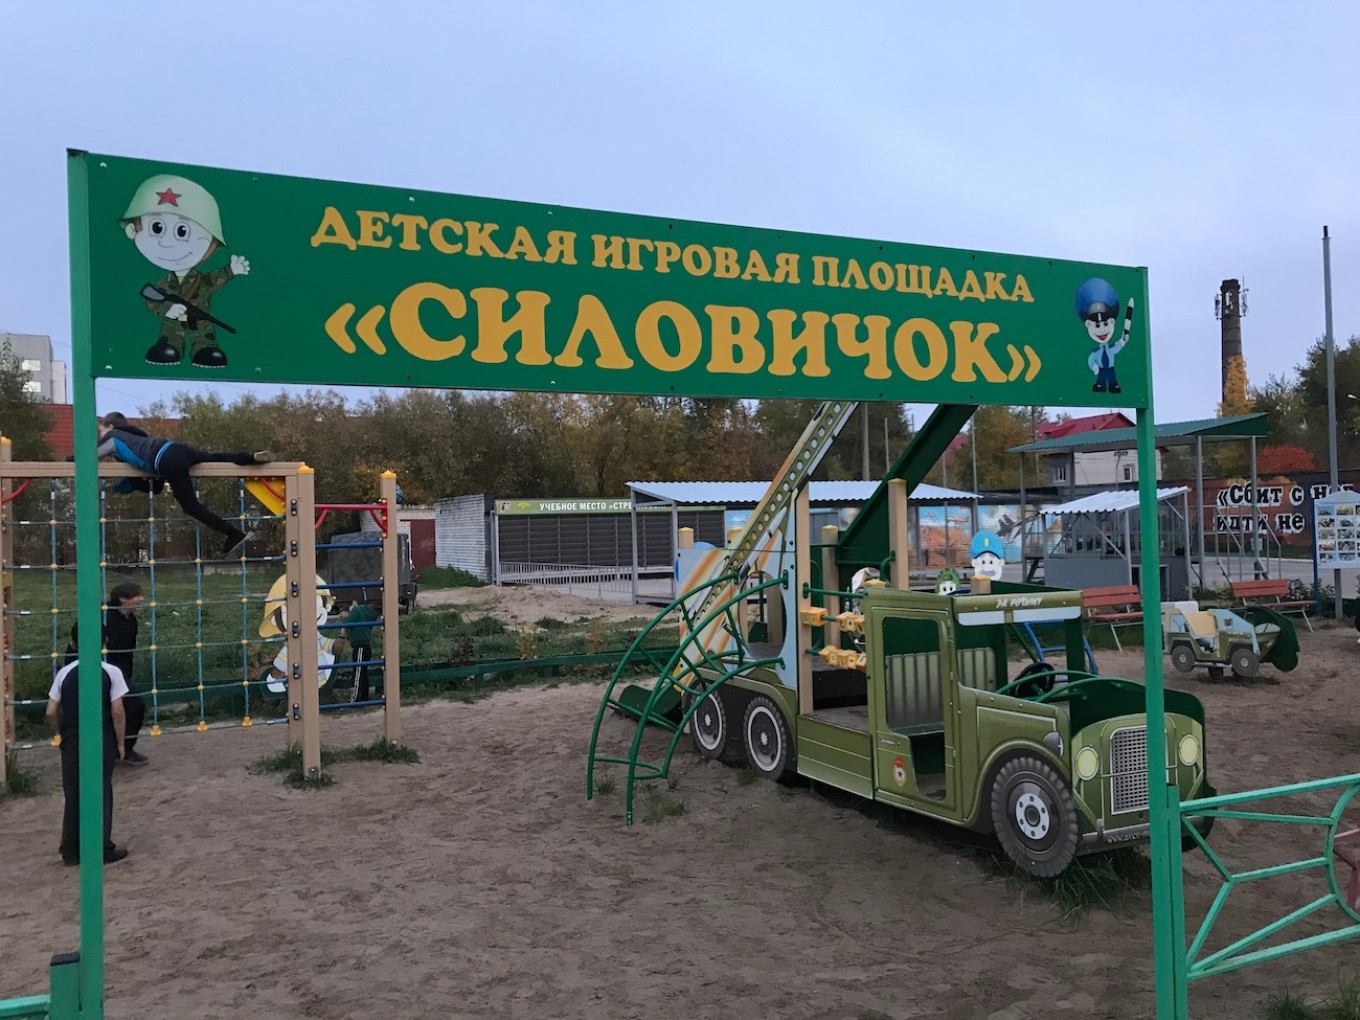 ‘Silovichok’ Children’s Military Playground Rekindles Debate in Russia